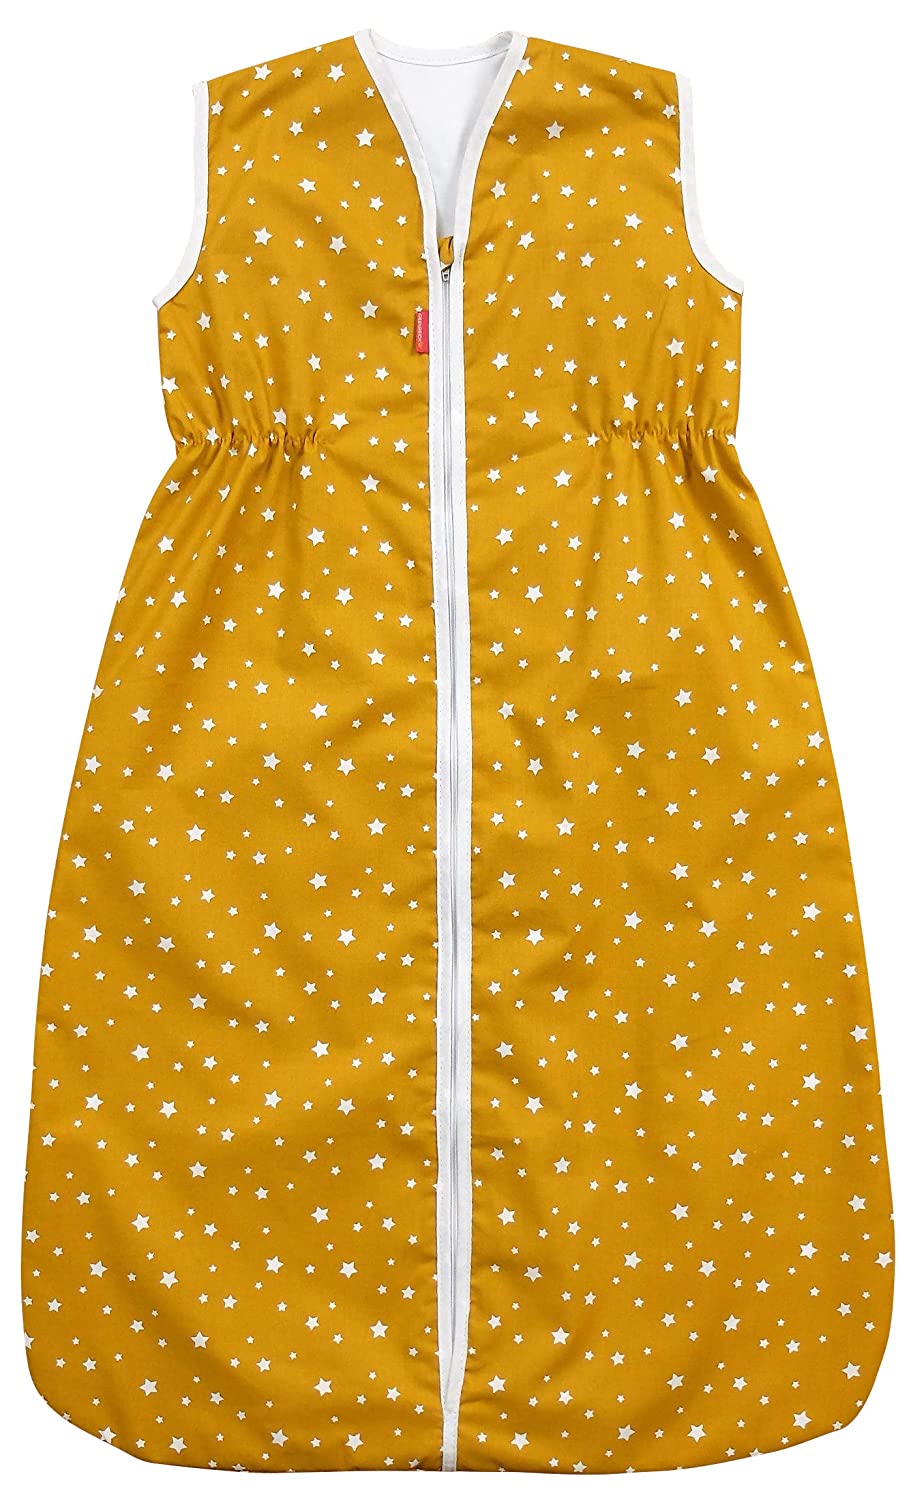 Ideenreich 2557 IDEENreich Sleeping Bag 70 Mustard Stars Multicoloured